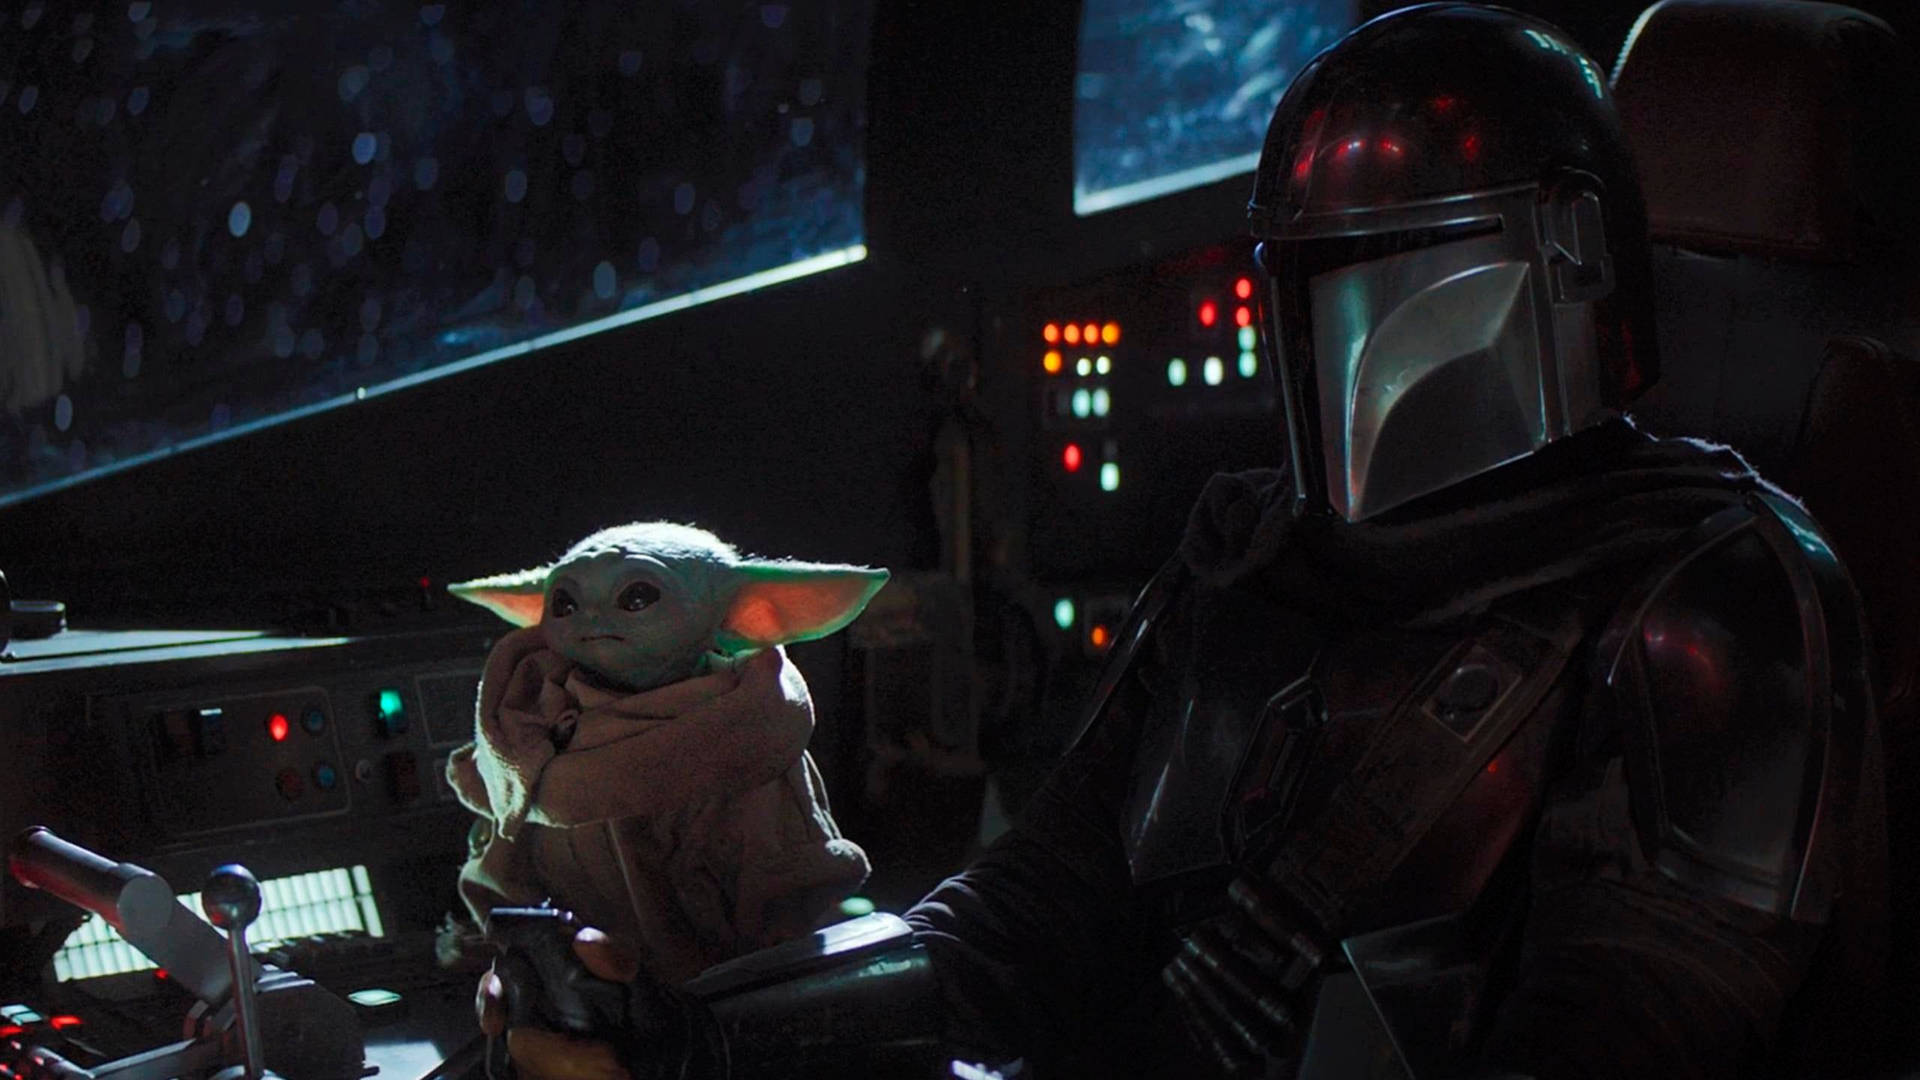 Star Wars Yoda In Spaceship Background